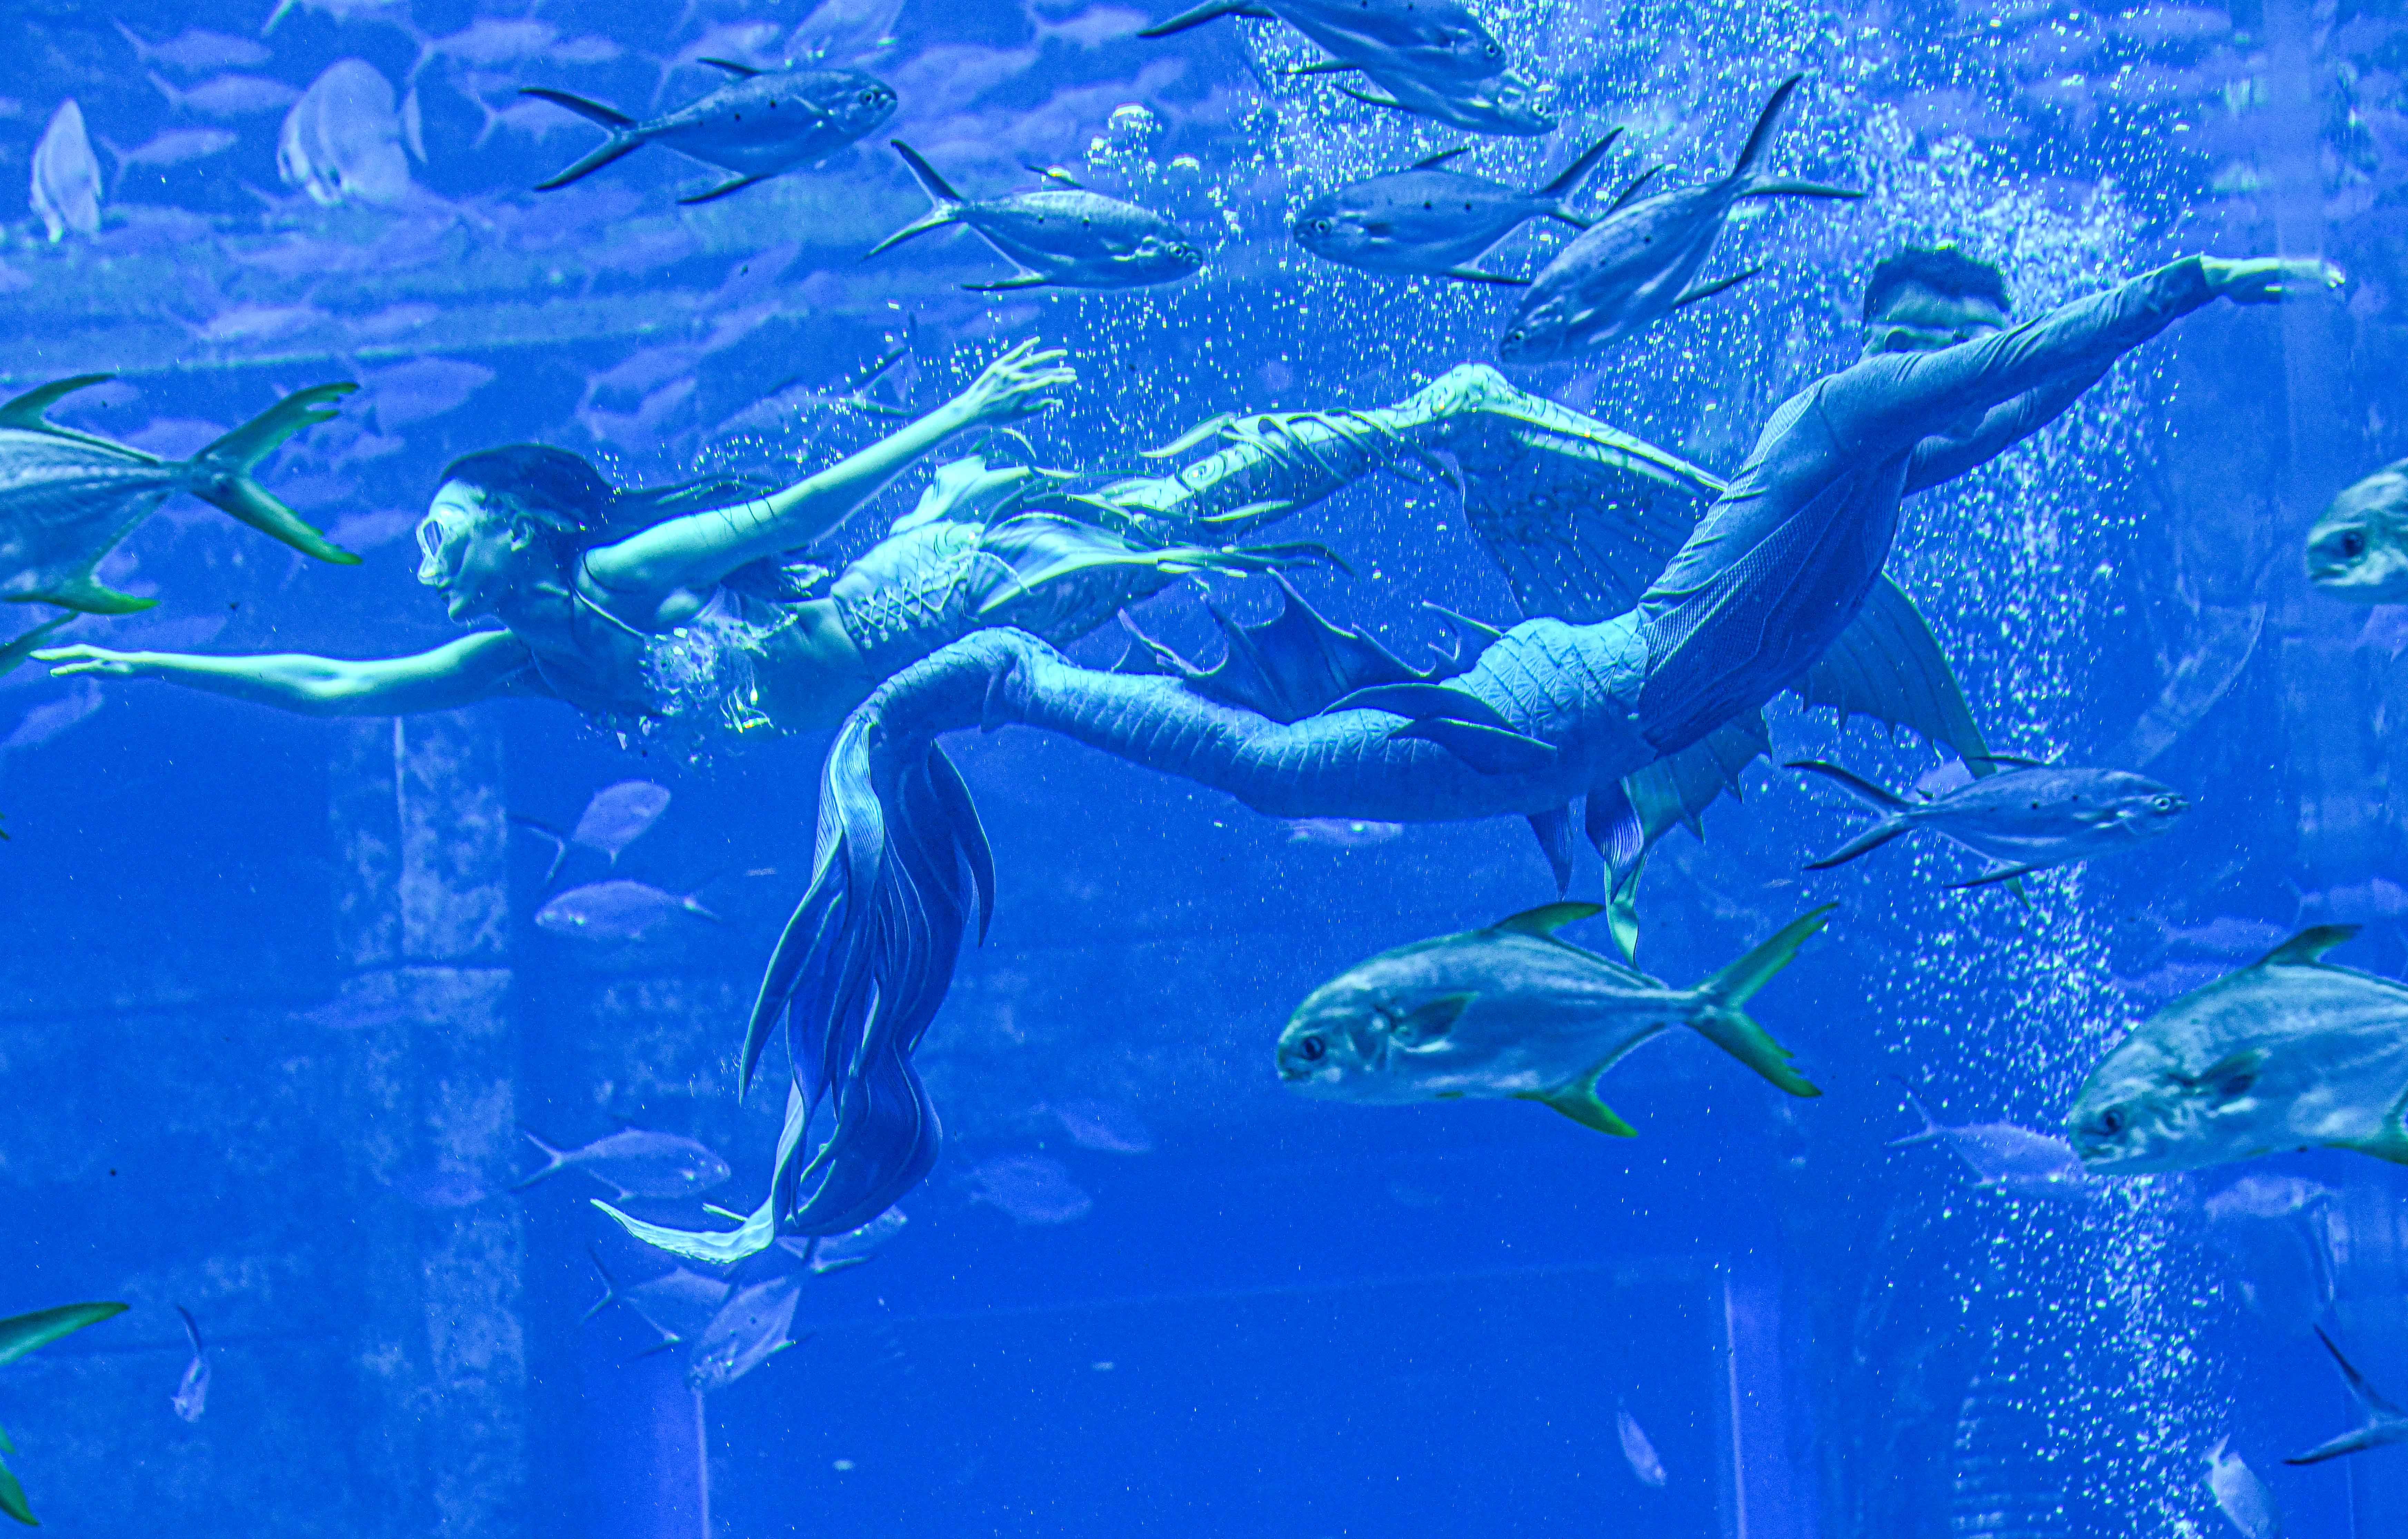 在三亚亚特兰蒂斯酒店的大使环礁湖中,美人鱼表演者在进行水下美人鱼